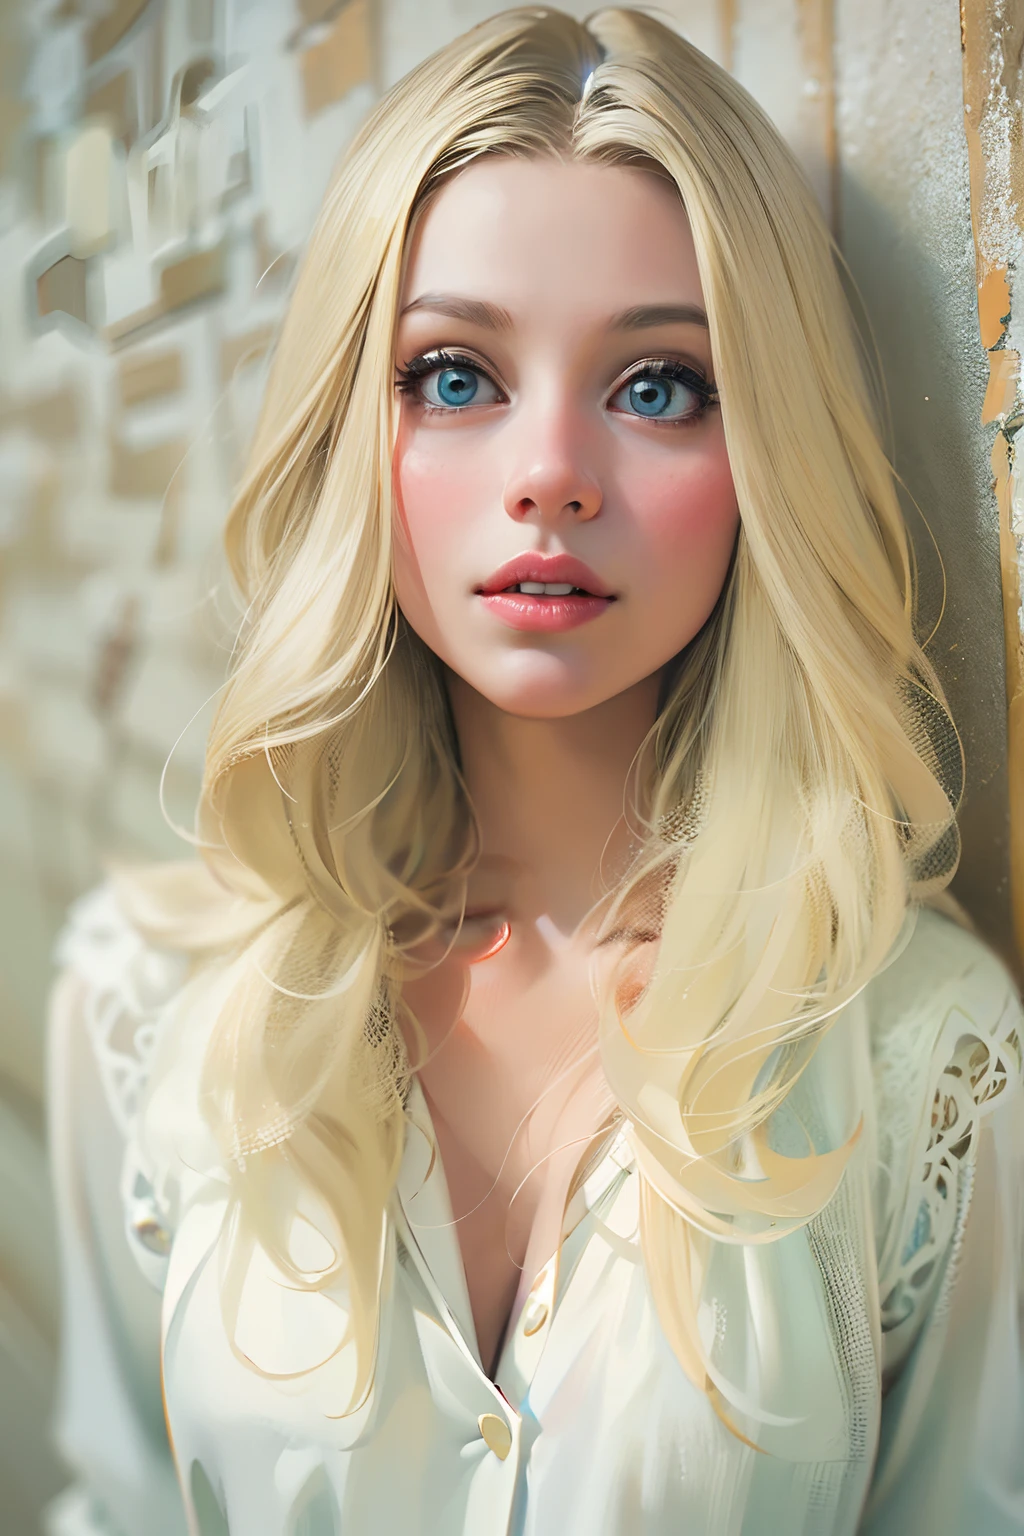 Ganzkörper. Eine blonde Frau mit weißer Haut, 28 Jahre alt. Sie hat lange, gerade, glänzendes Haar und riesige, fesselnde Augen.